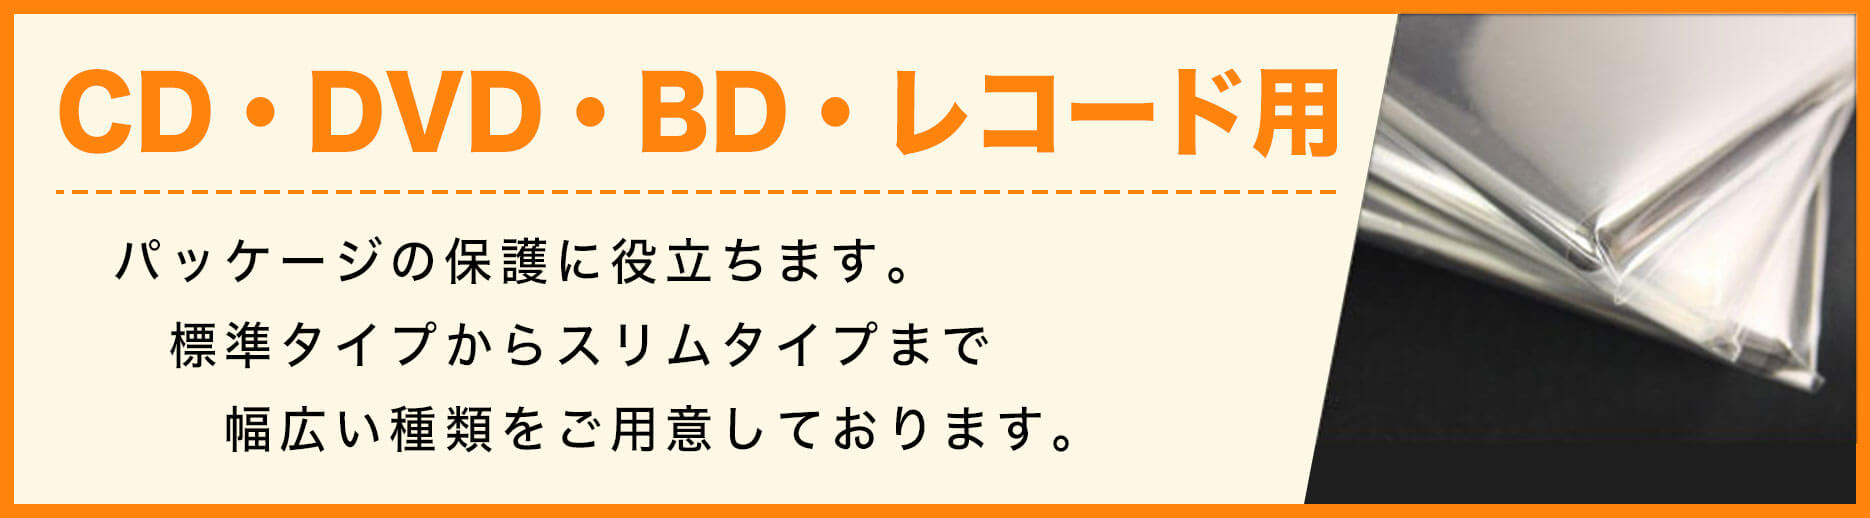 CD・DVD・BD・レコード・ゲーム用袋